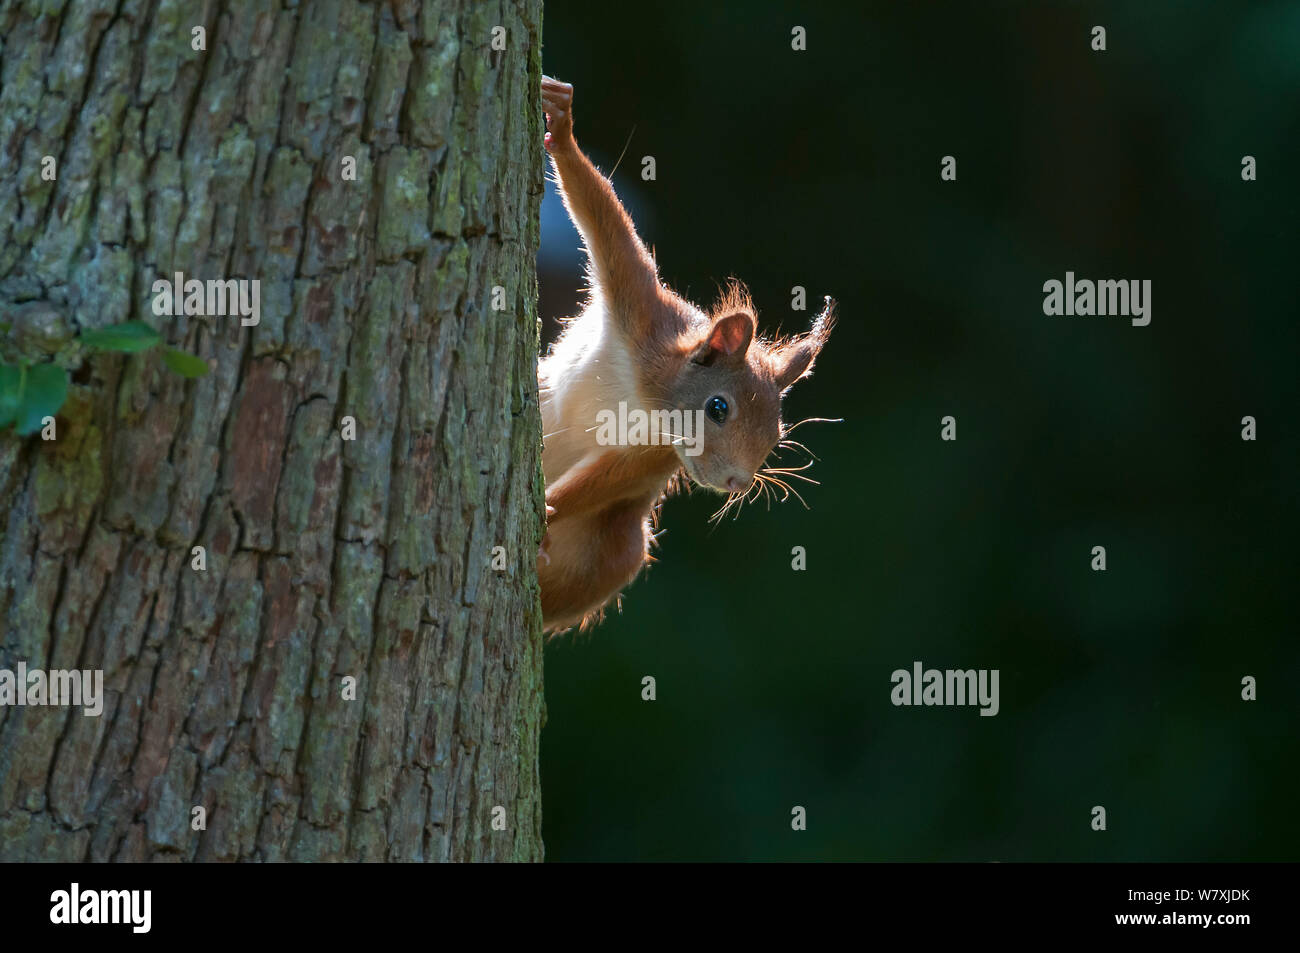 Red scoiattolo (Sciurus vulgaris) sul tronco di albero, Brasschaat, Belgio, Giugno. Foto Stock